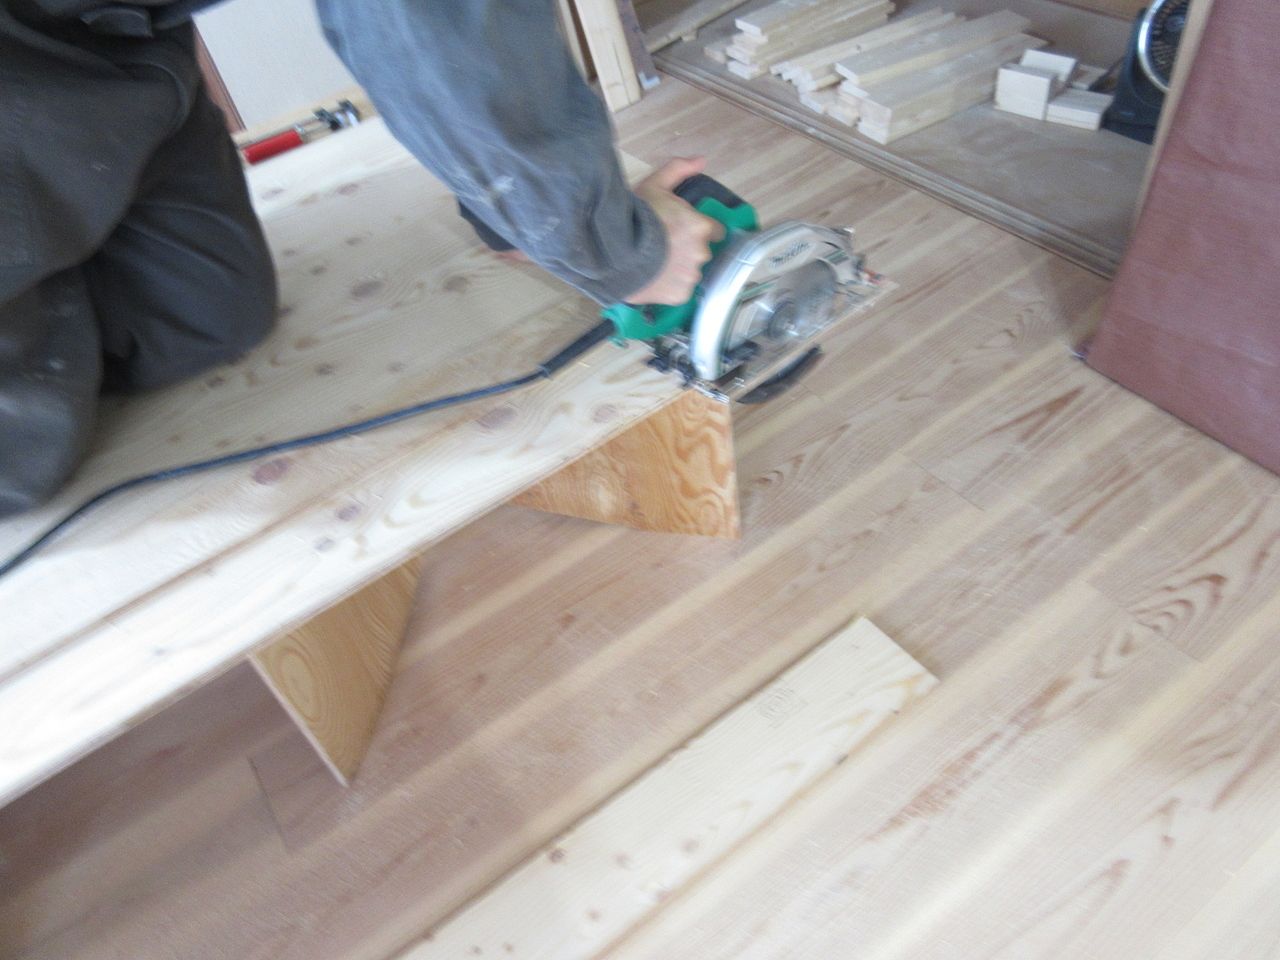 電動工具である丸ノコを使って合板をカットします。
そして、サンドペーパーを使って合板の角部分を磨いて削り落します。